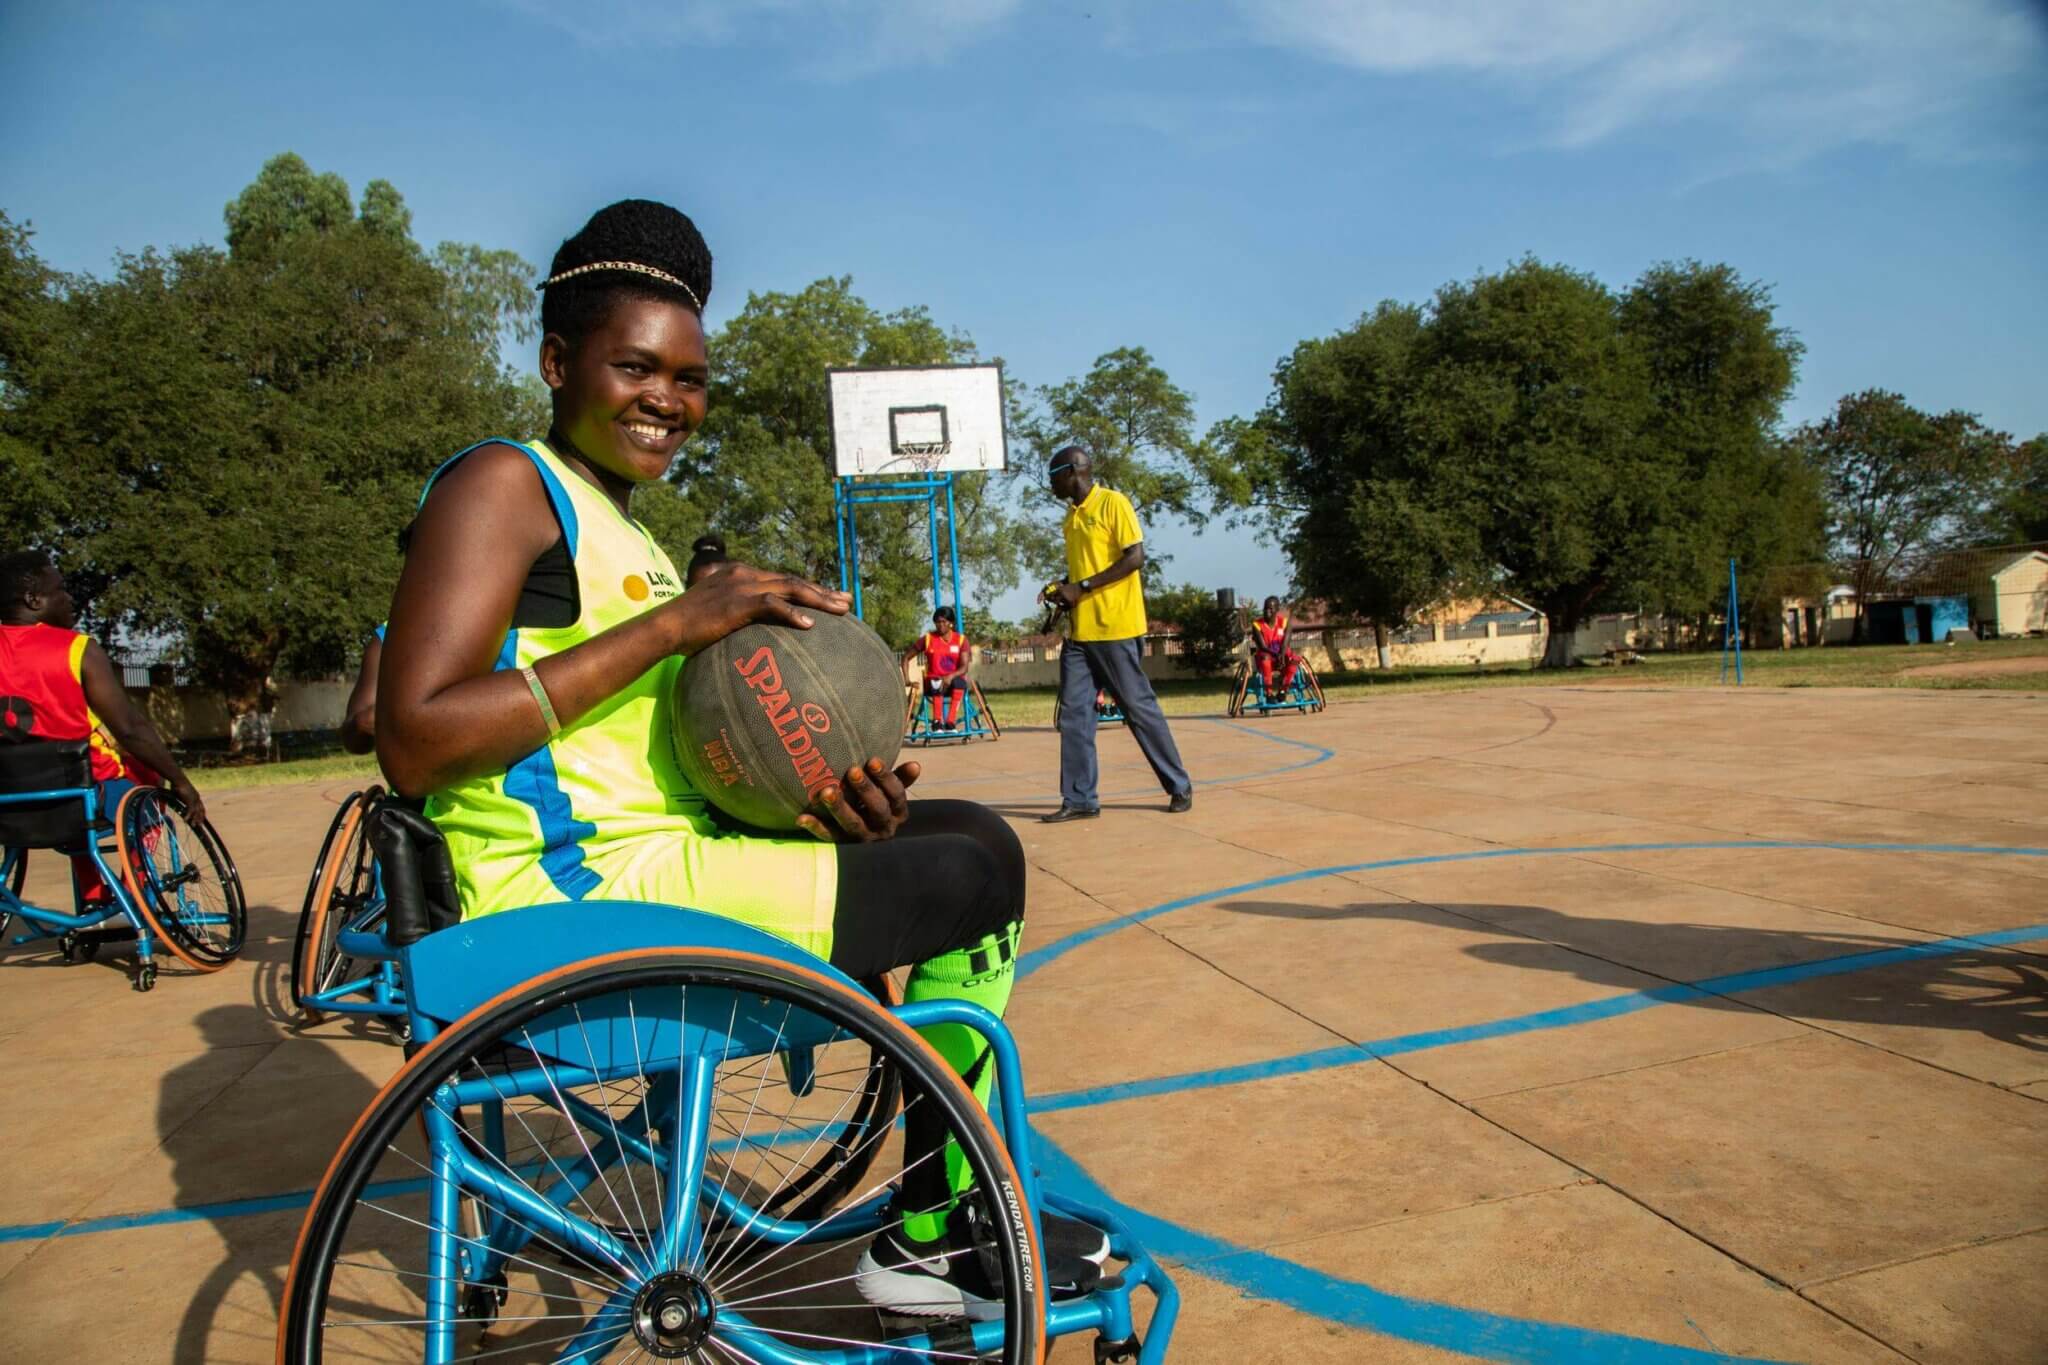 Lucy, eine Inklusionsberaterin von Licht für die Welt in Mosambik, sitzt im Rollstuhl und nimmt an einem Basketballtrunier teil. Sie trägt ein gelbes Trikot und hält den Ball lächelnd in ihren Händen.